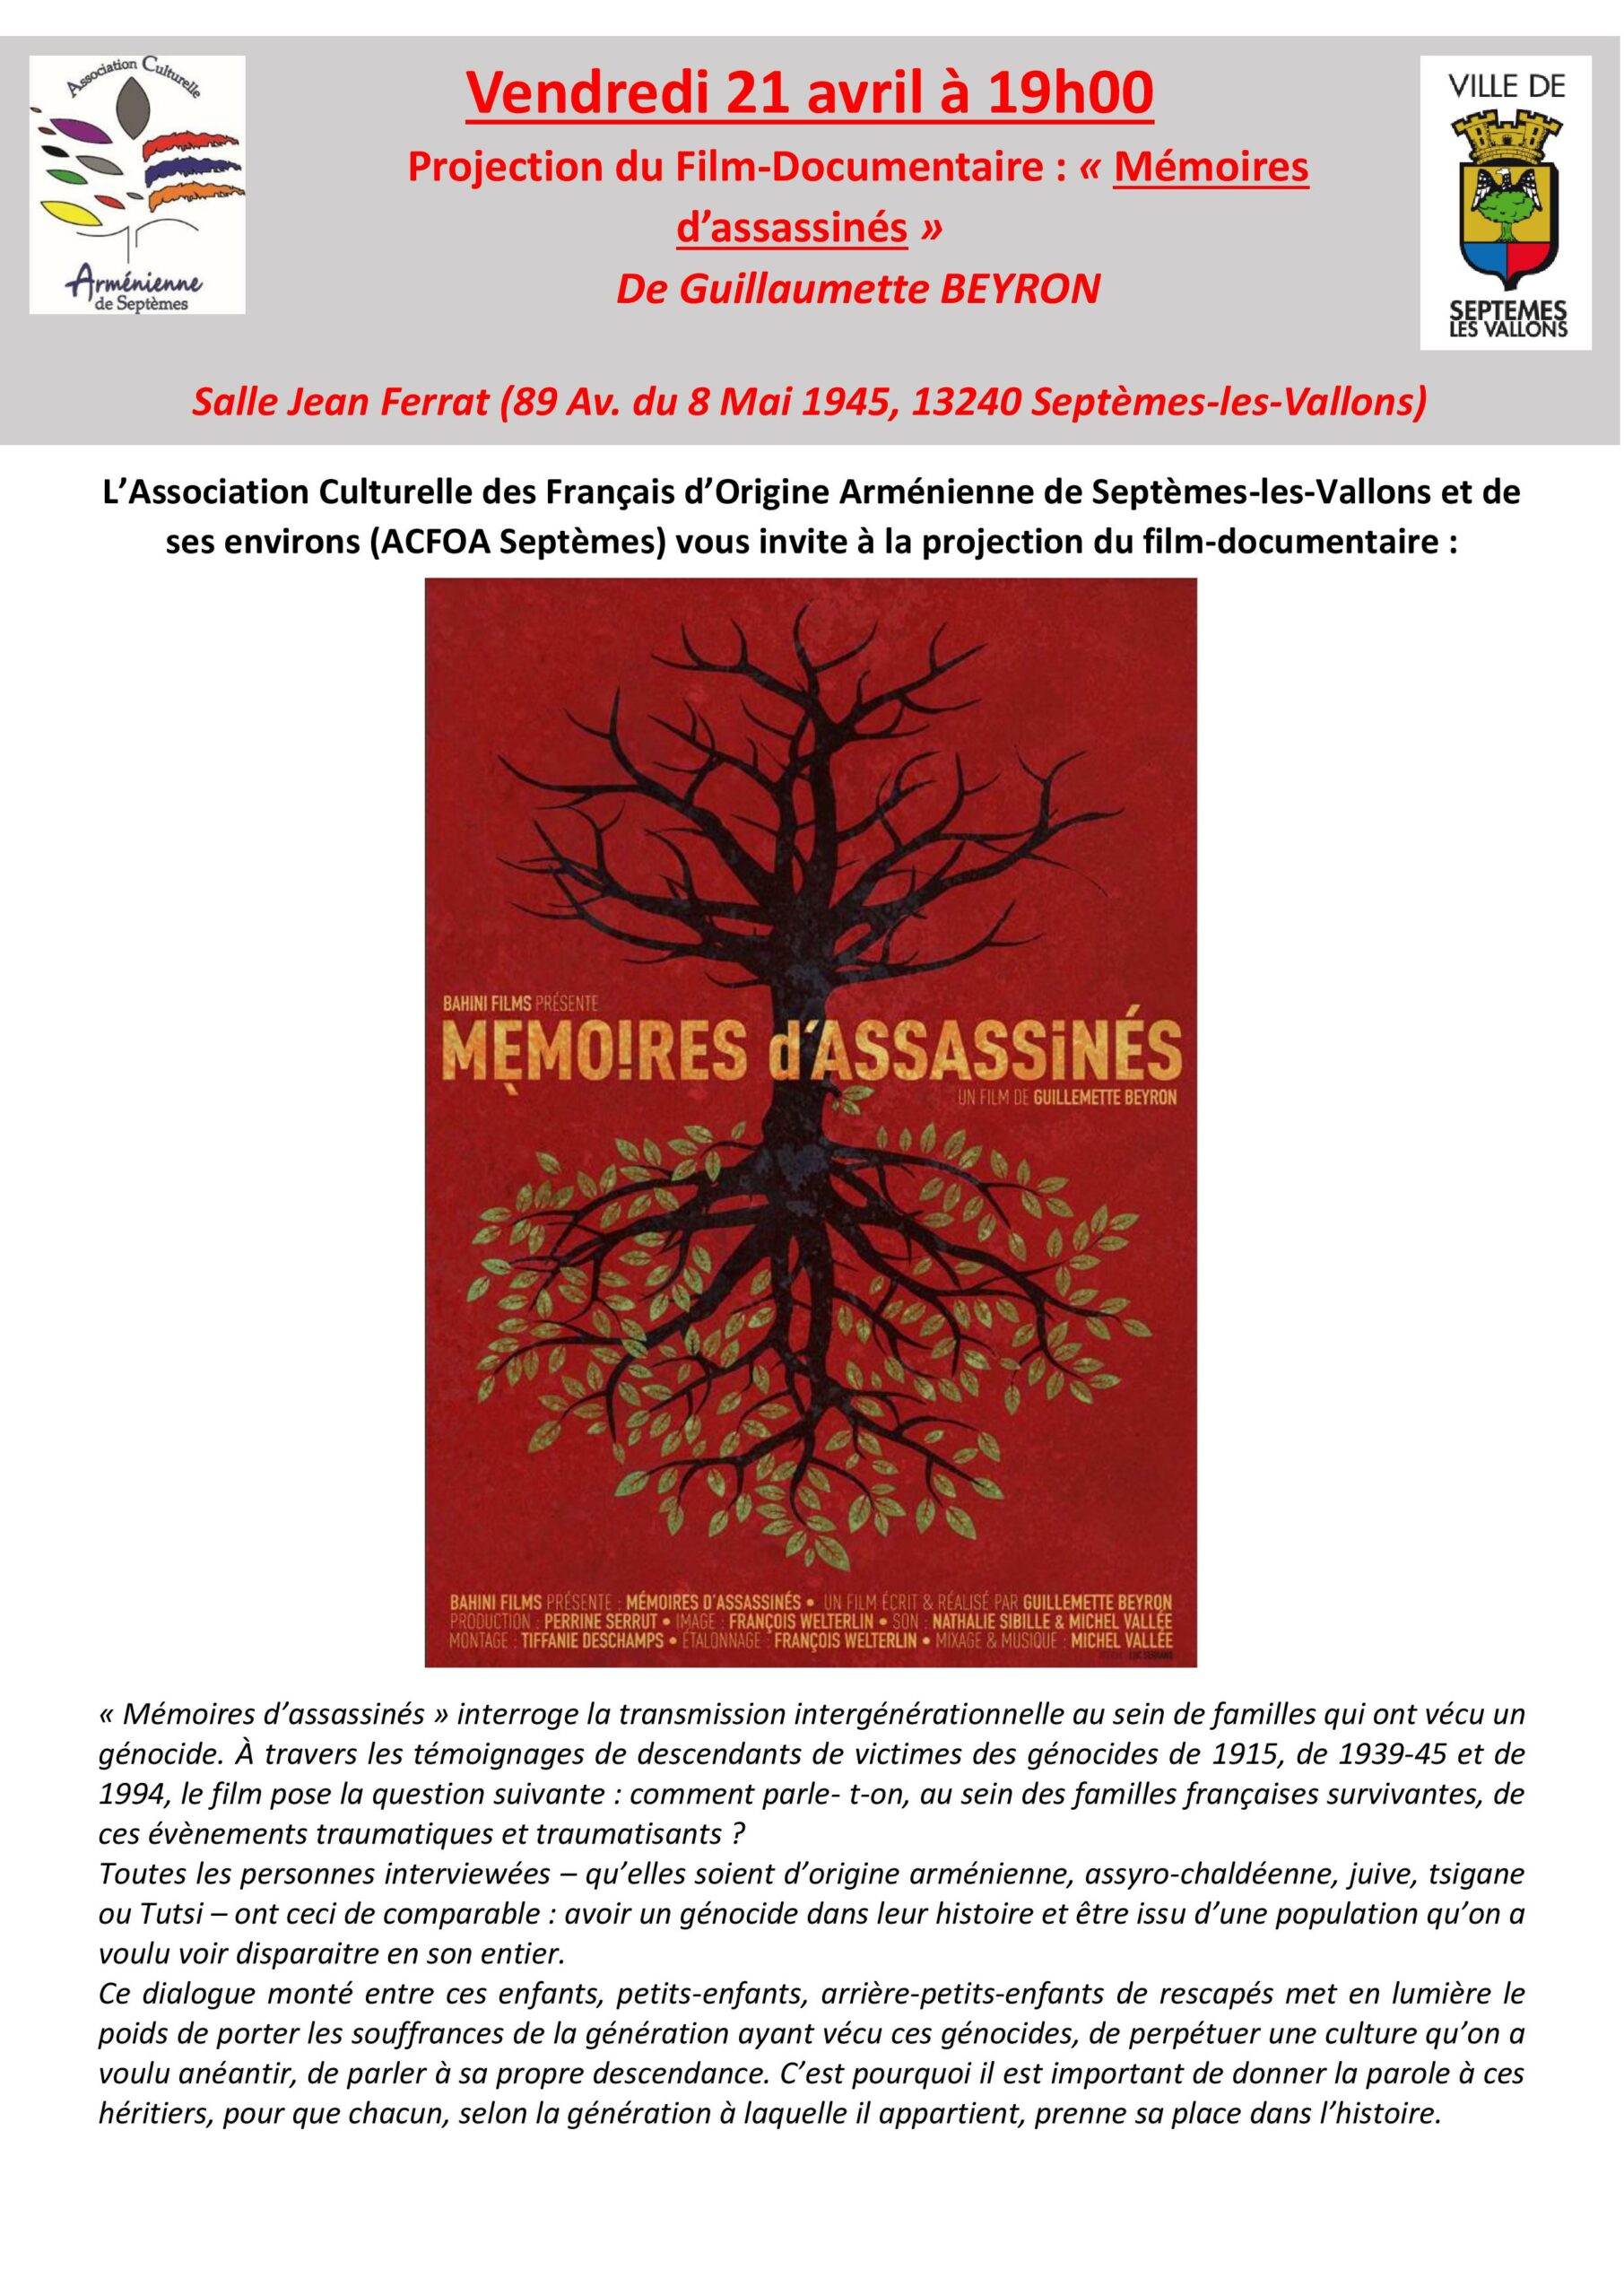 Film-documentaire “Mémoires d'assassinés” de Guillaumette Beyron